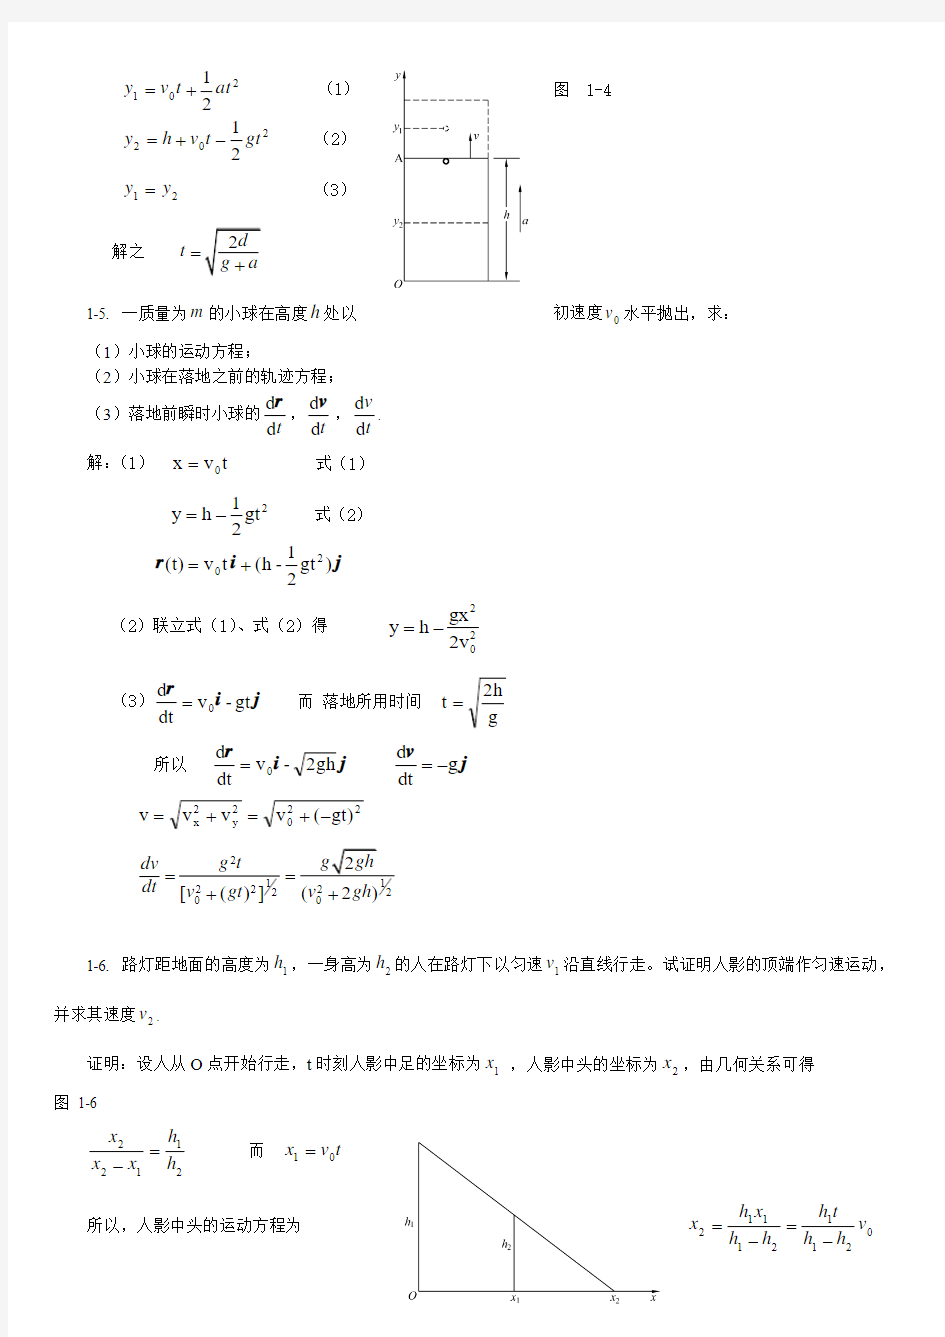 《大学物理学》答案(上海交大版)上下册(免费下载哦)